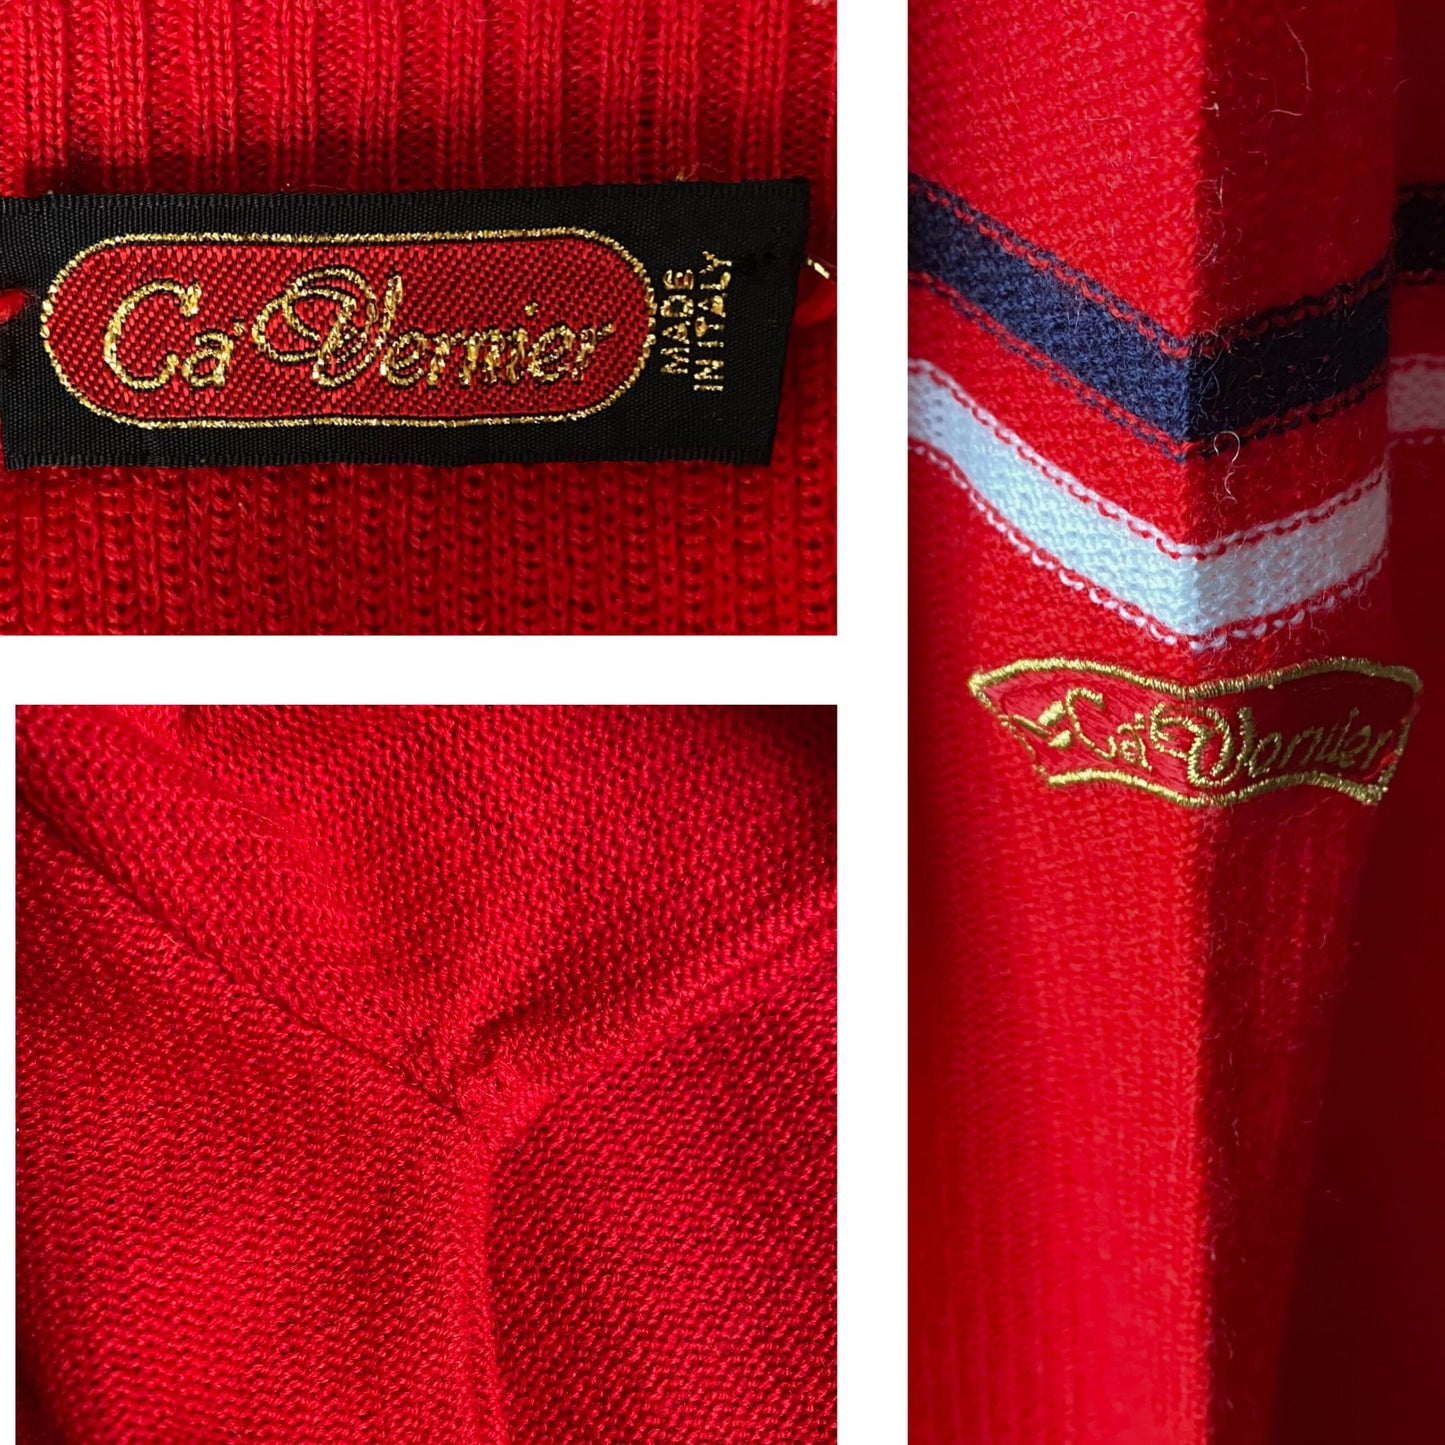 60s Mod Style Red V neck Vintage Cardigan.  Approx UK size 12-16